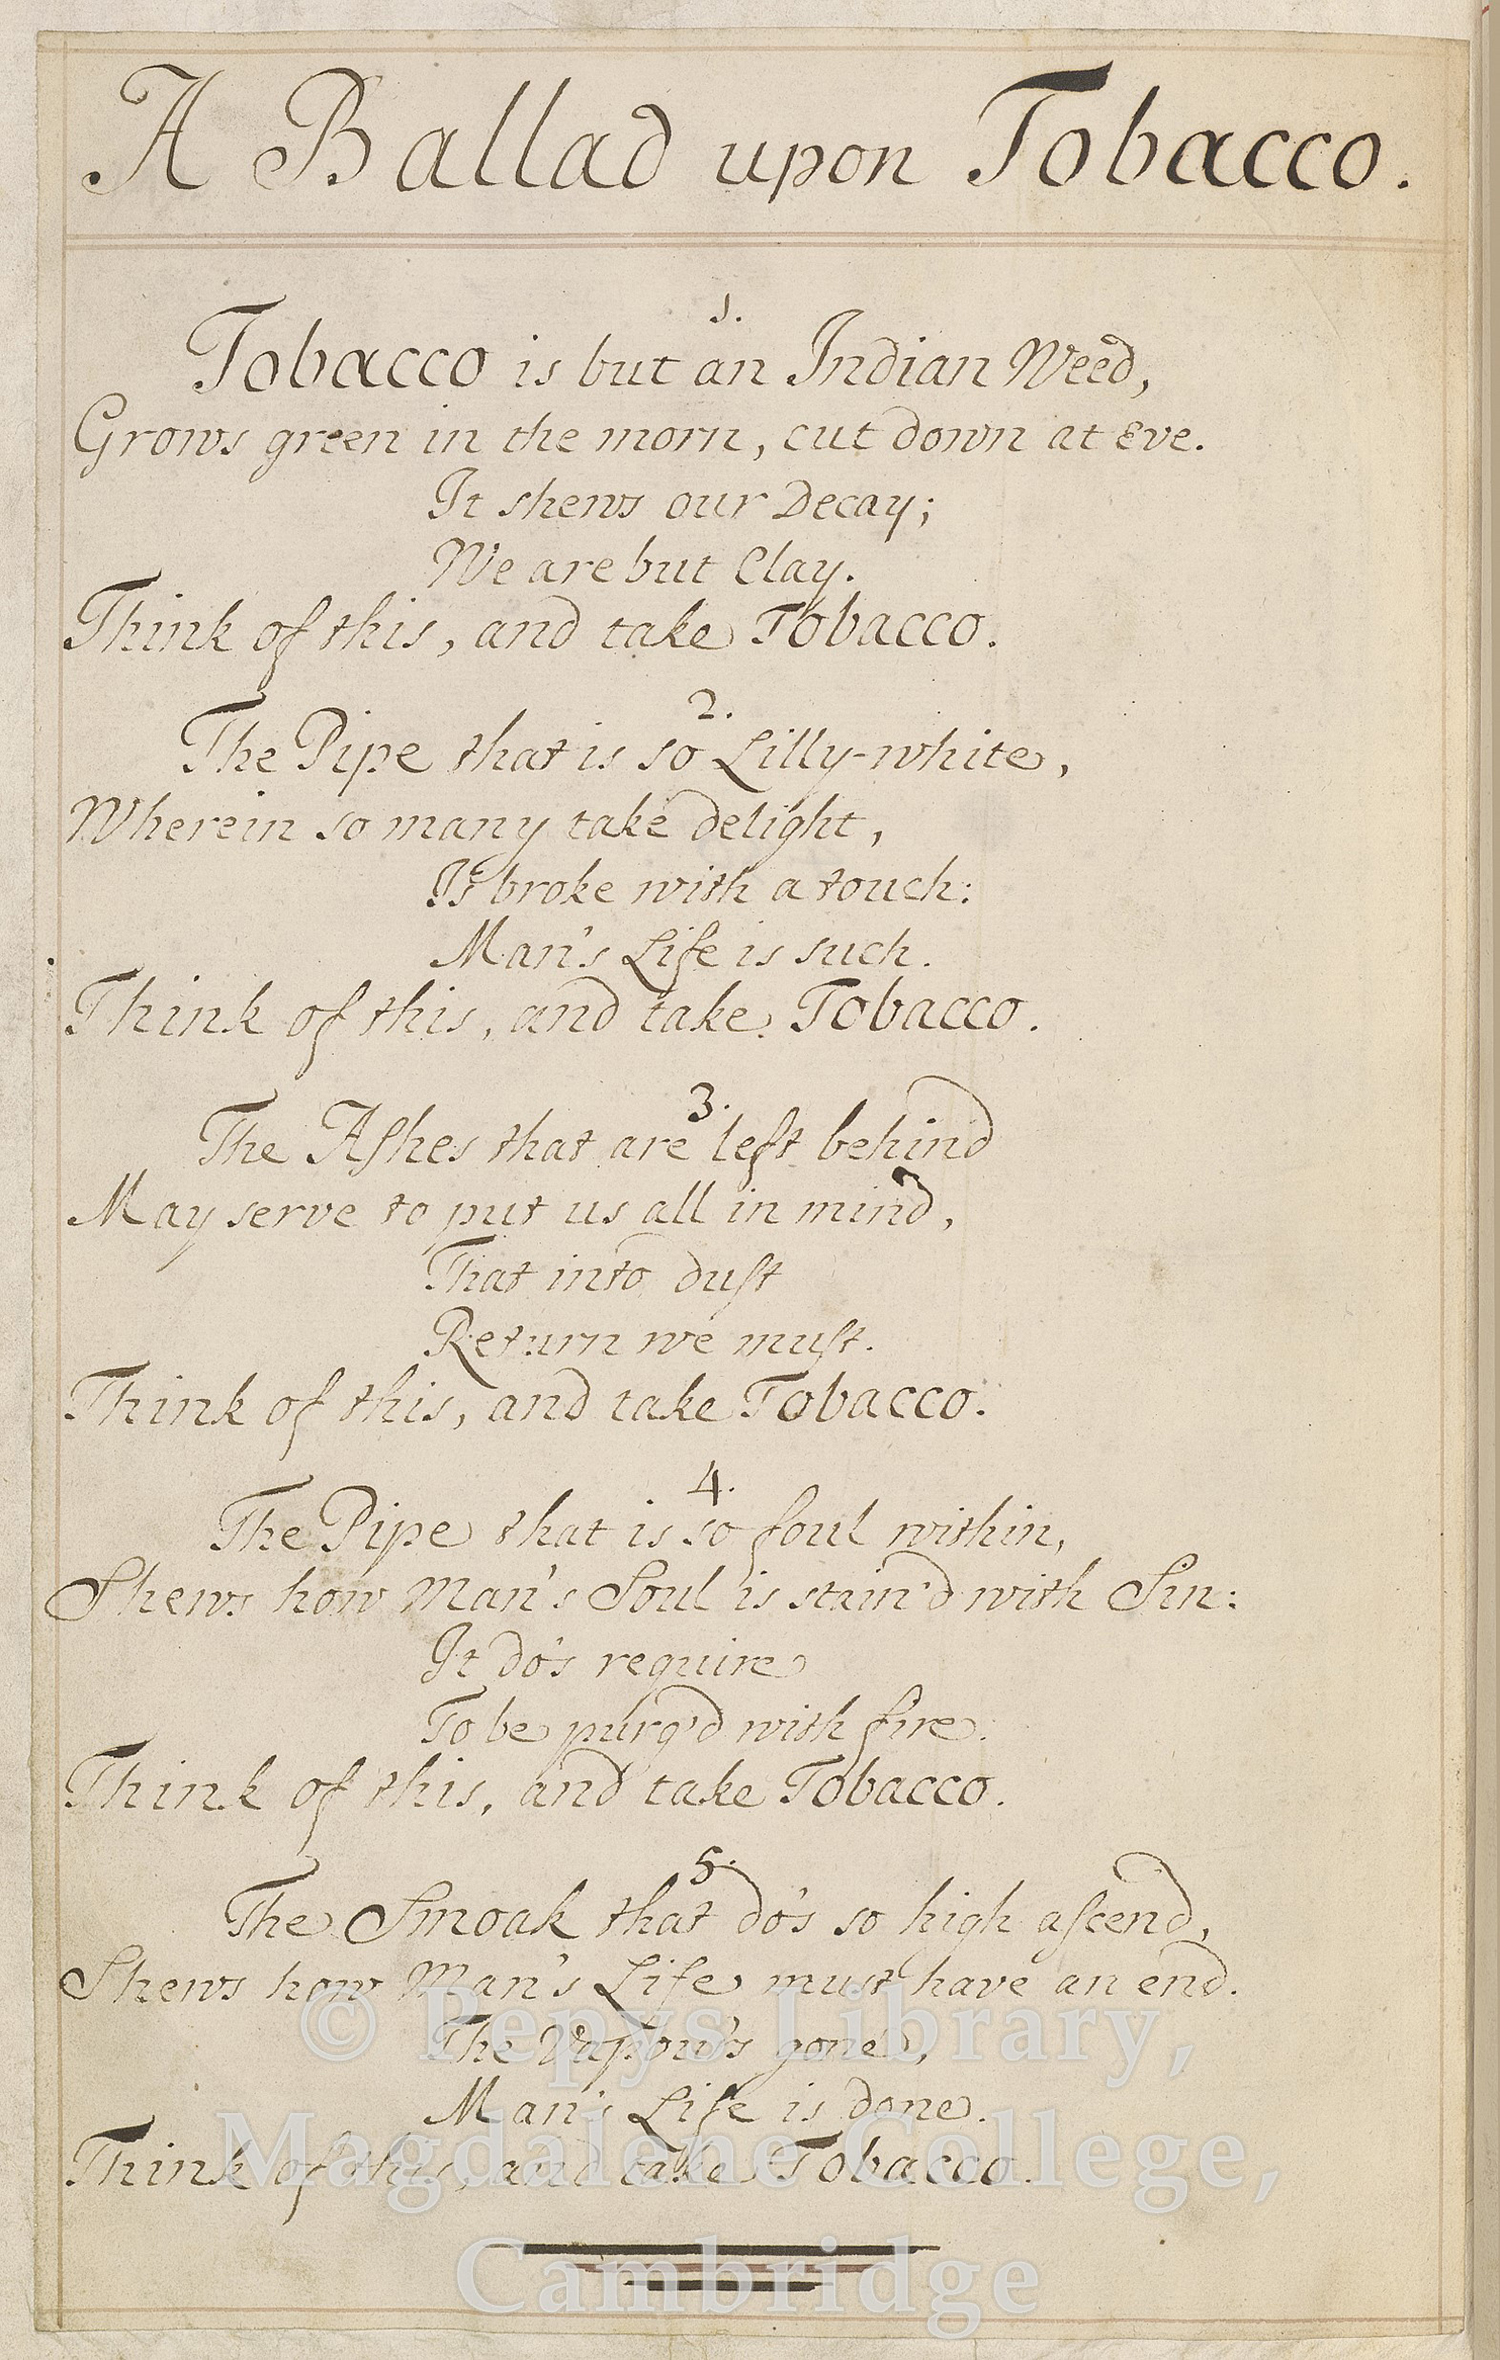 Manuscript A Ballad upon Tobacco – Pepys Ballads V.436